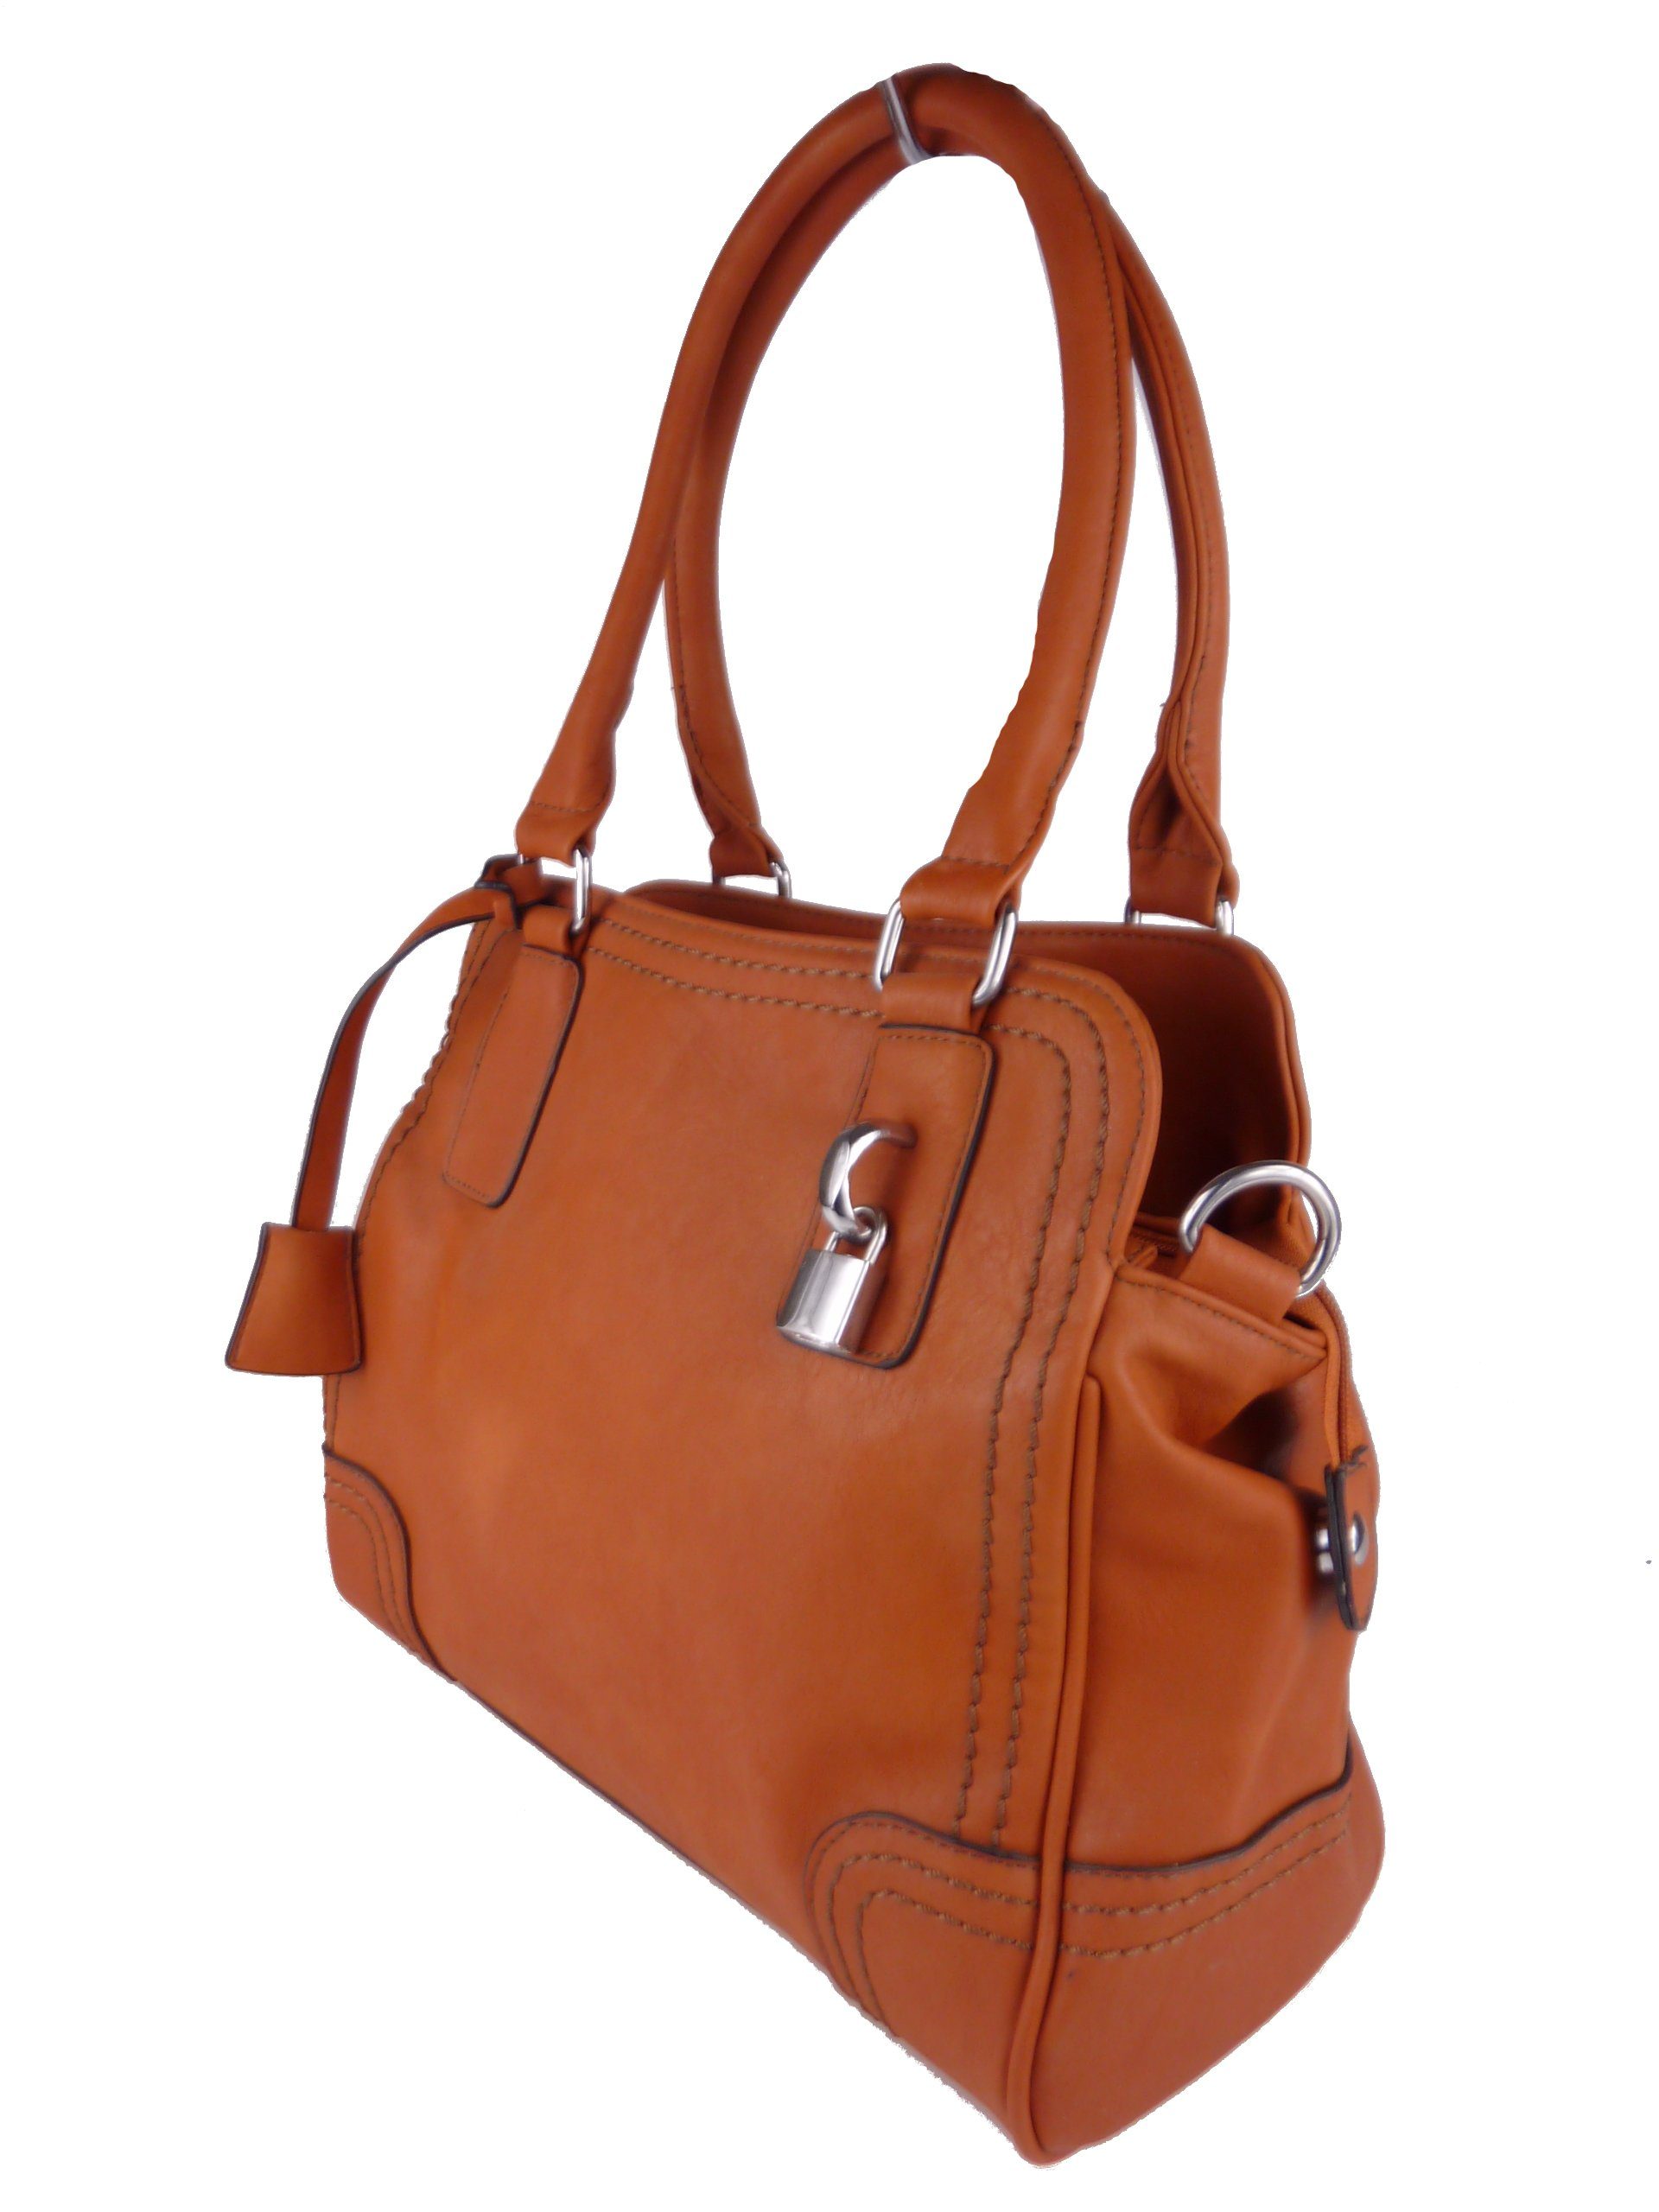 Taschen4life Handtasche klassische Handtasche C1125, elegante Schultertasche, tote bag, satchel hobo weat/brown